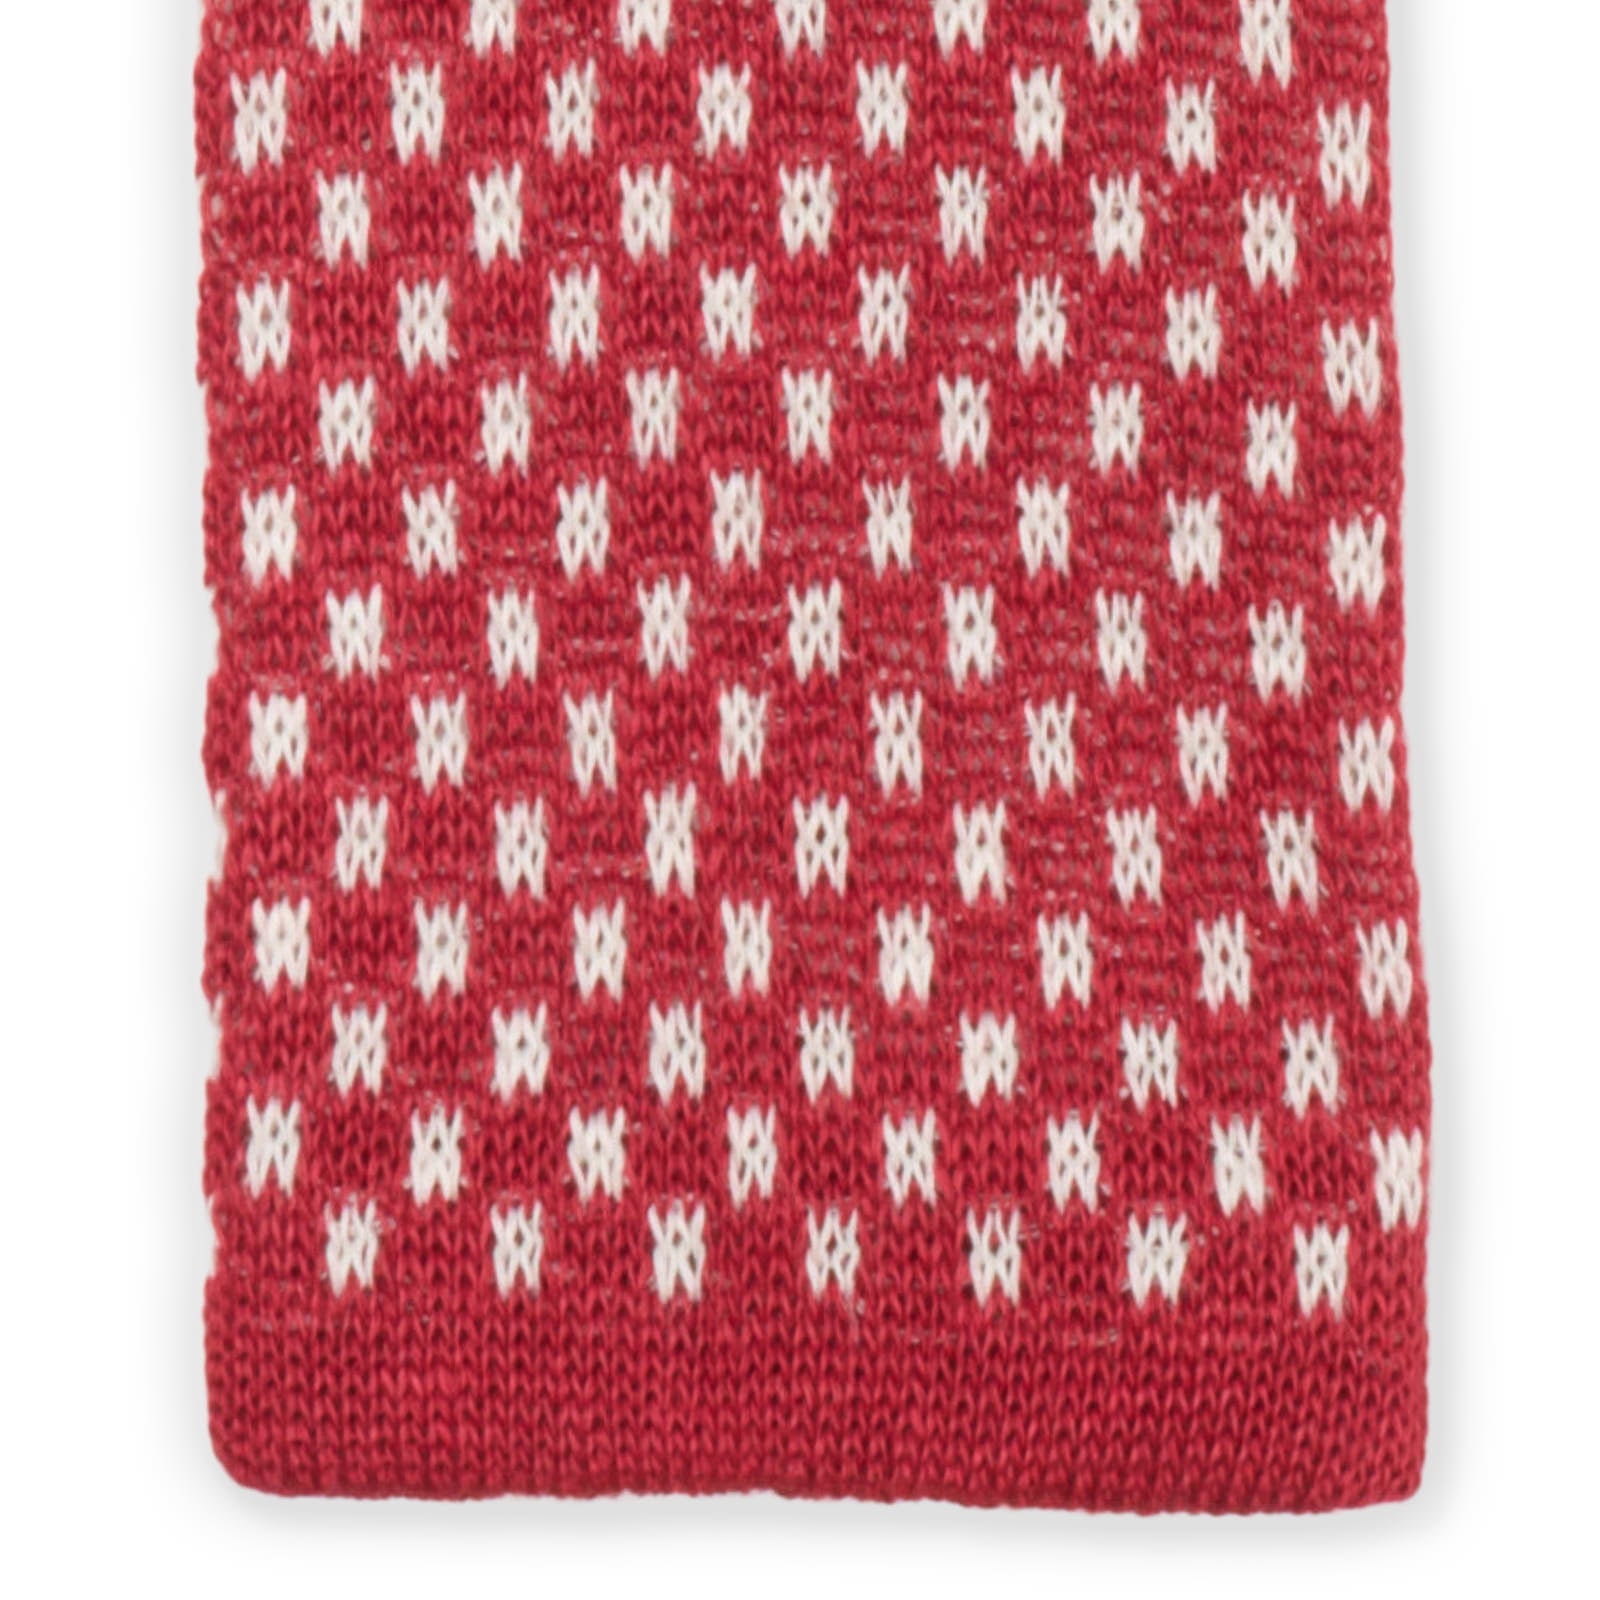 MATTABISCH FOR VANNUCCI Red Dotted Linen Knit Tie NEW